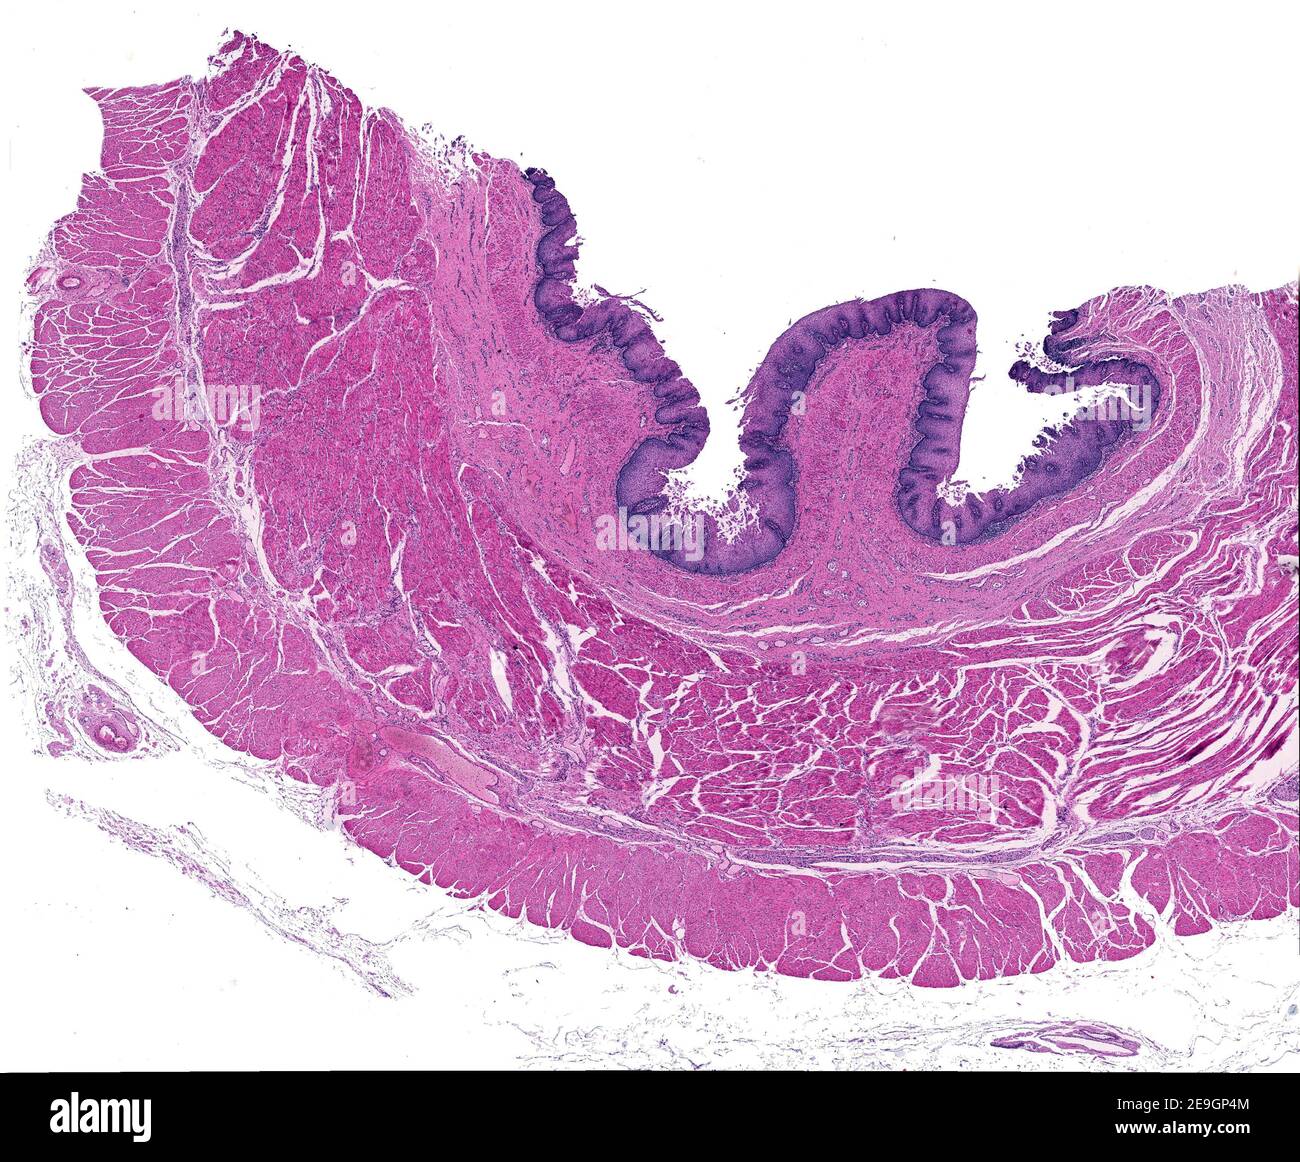 Micrographe à faible grossissement montrant les couches de la paroi d'un oesophage humain : muqueuse, sous-muqueuse, musculaire et adventice. Banque D'Images